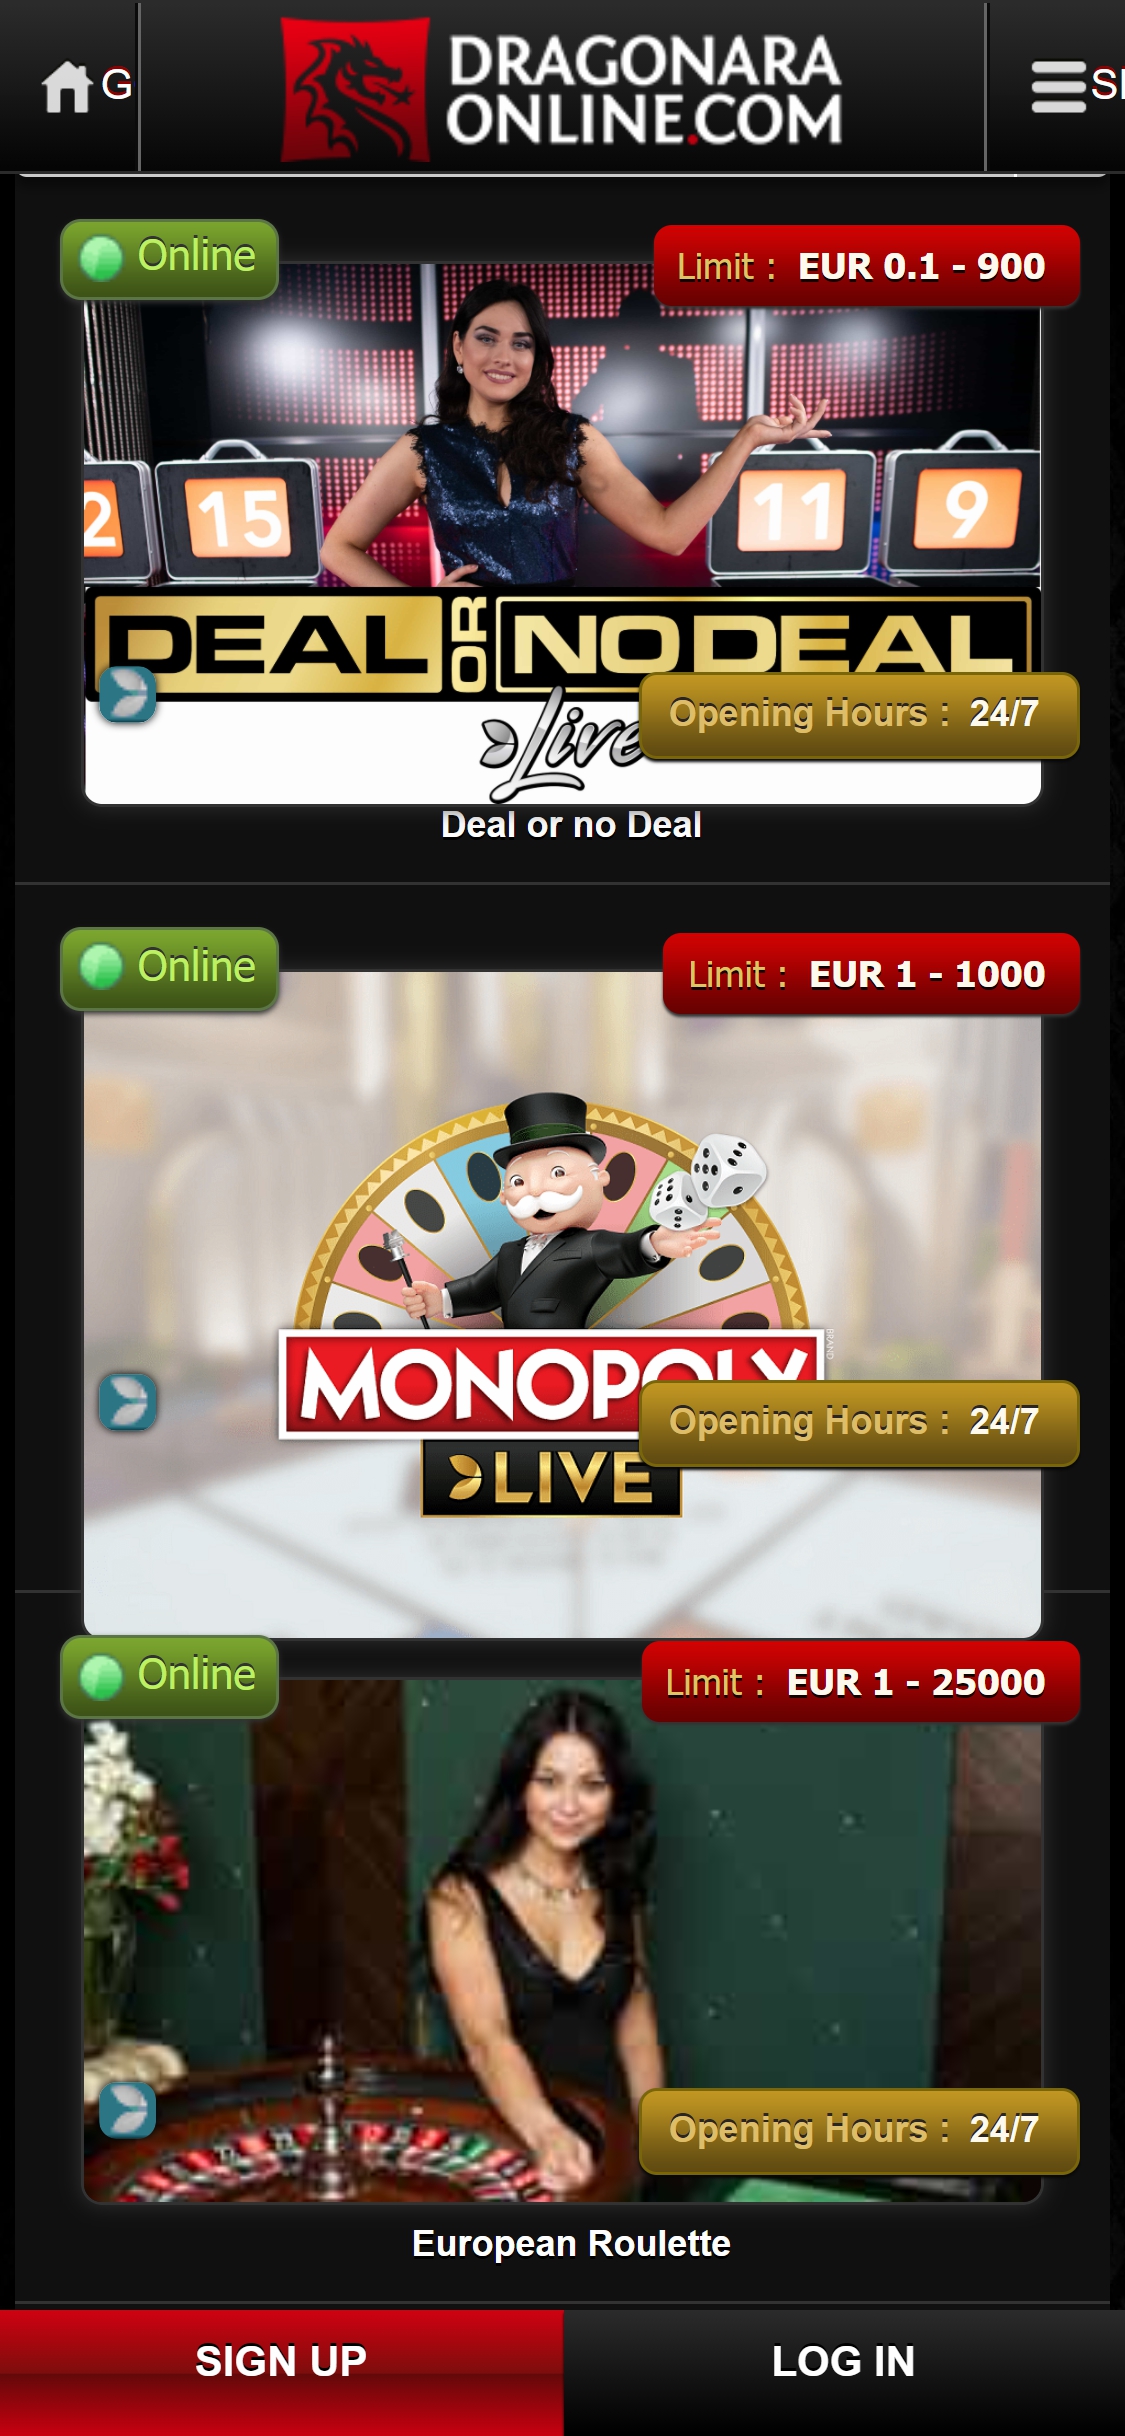 Dragonara Casino Mobile Live Dealer Games Review